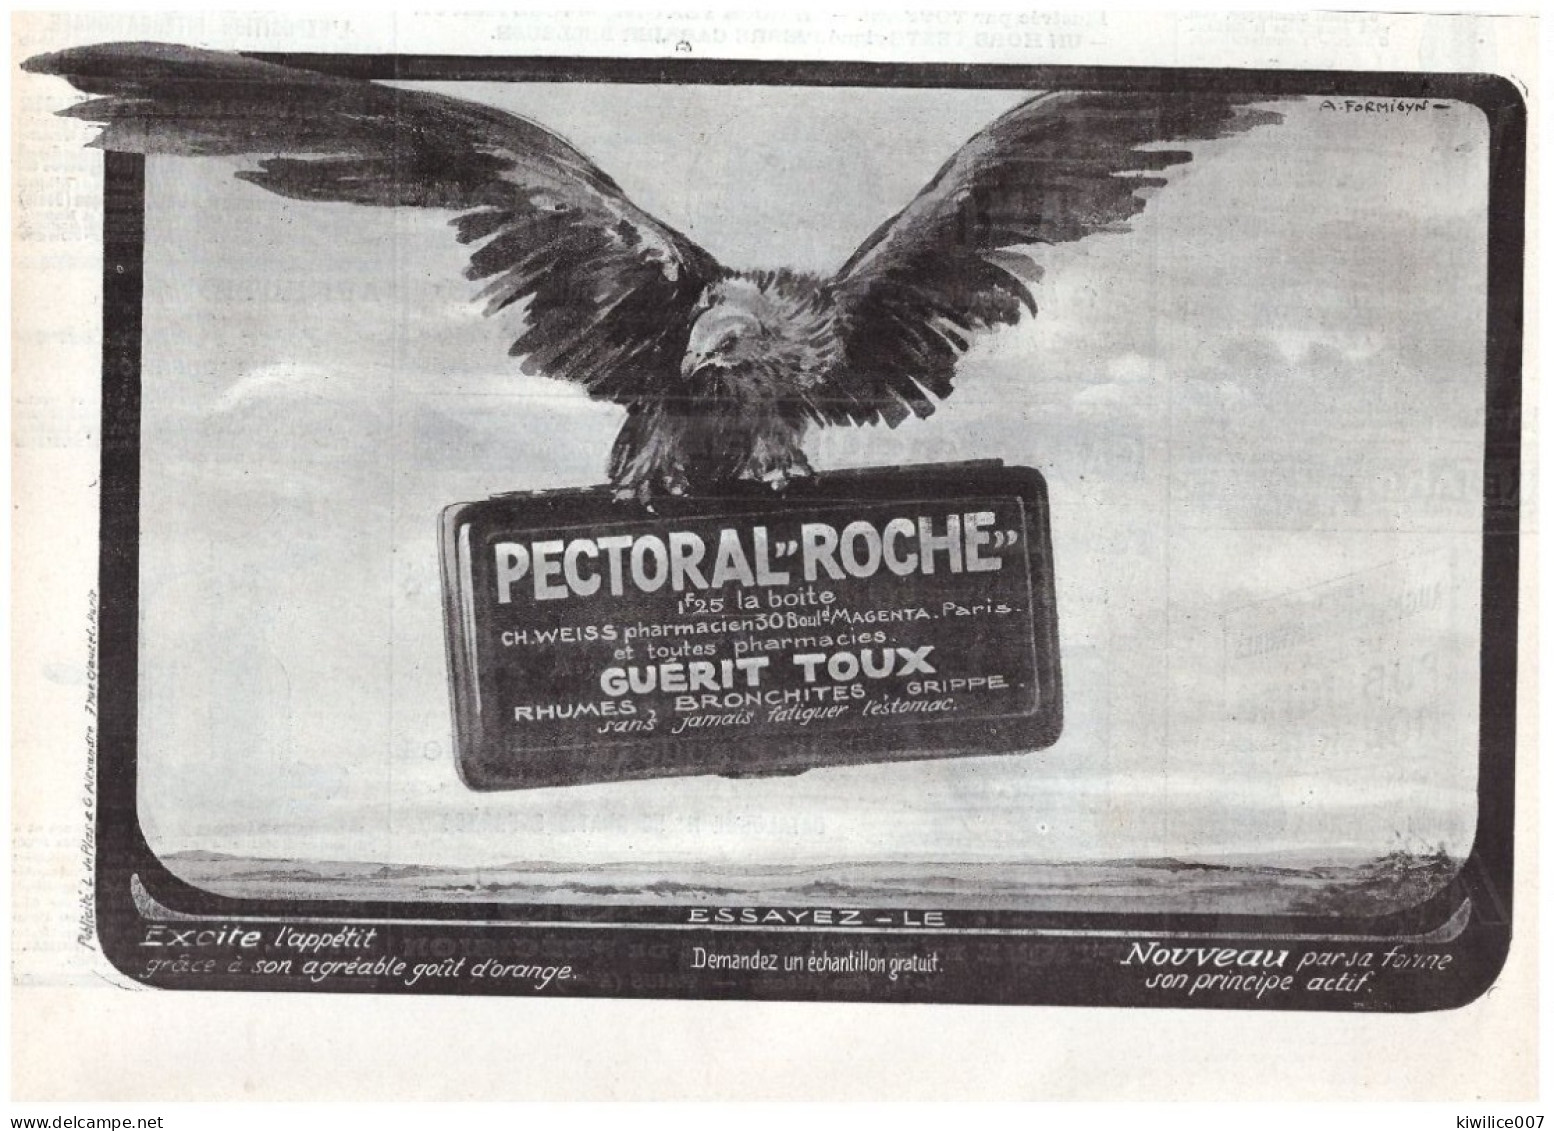 1911 Publicité  PECTORAL  ROCHE  Guérit Toux Pharmacie 30 Boulevard Magenta Paris  Ilustrateur A FORMISYN Aigle RAPACE - Publicités